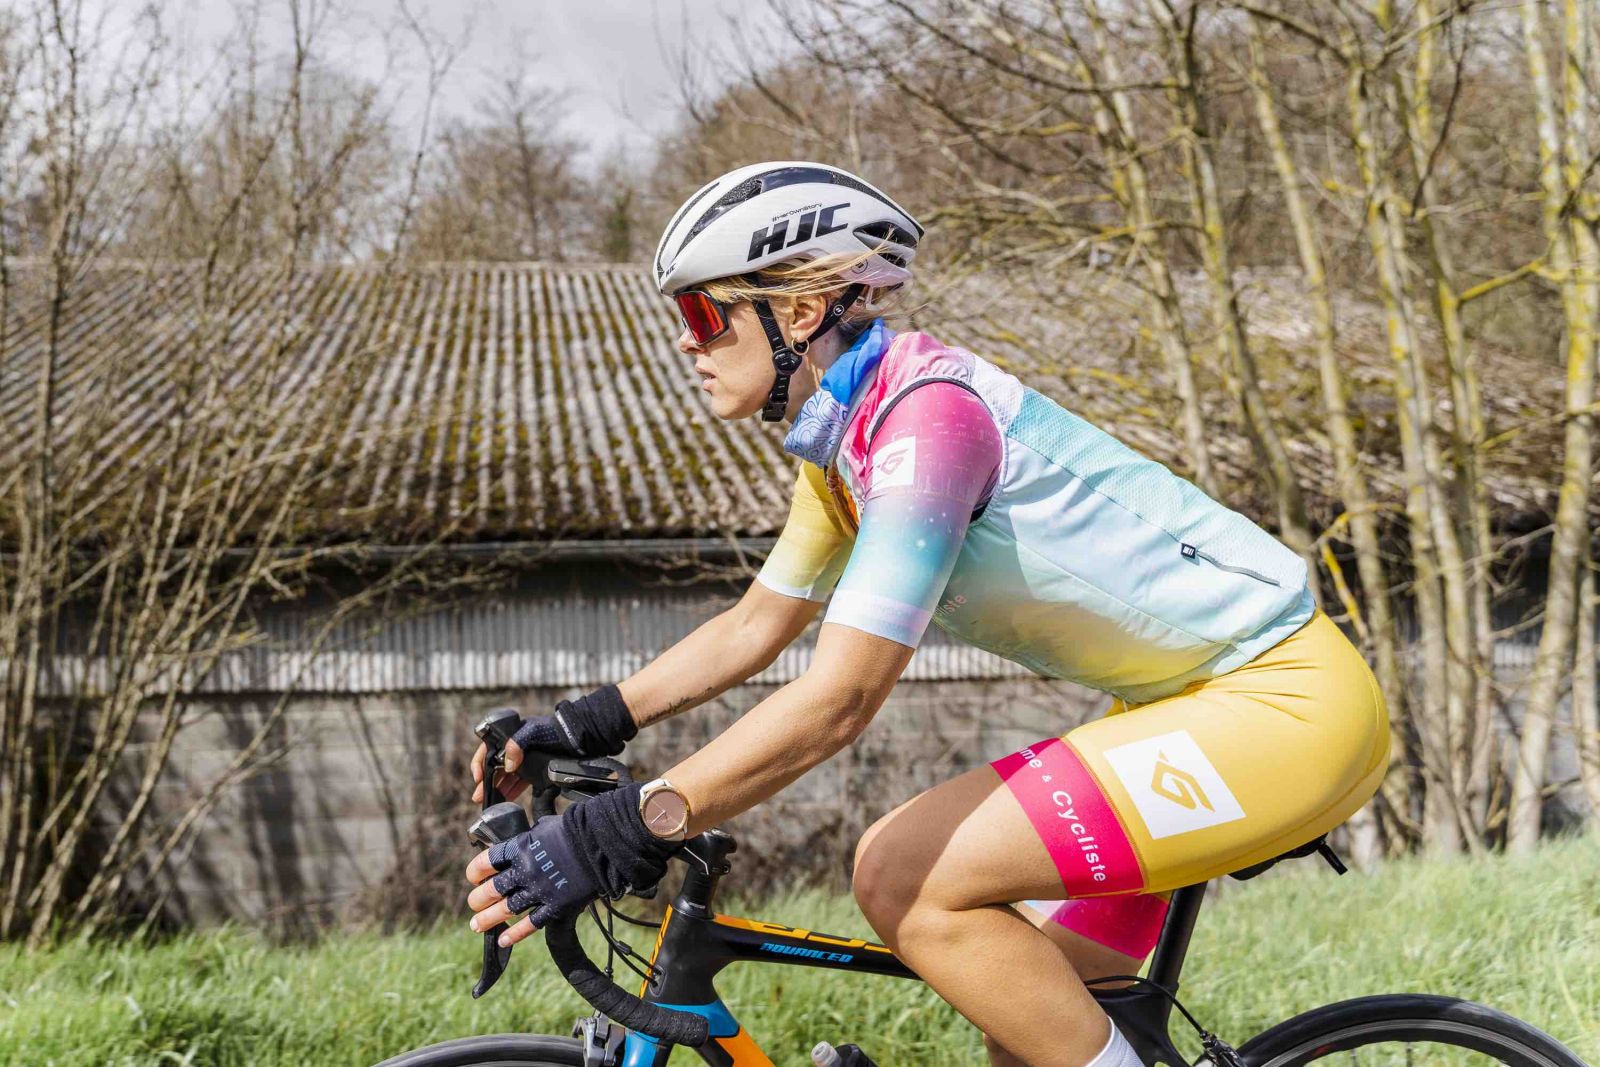 Hutchinson X Femme & Cycliste : une équipe 100% féminine à l